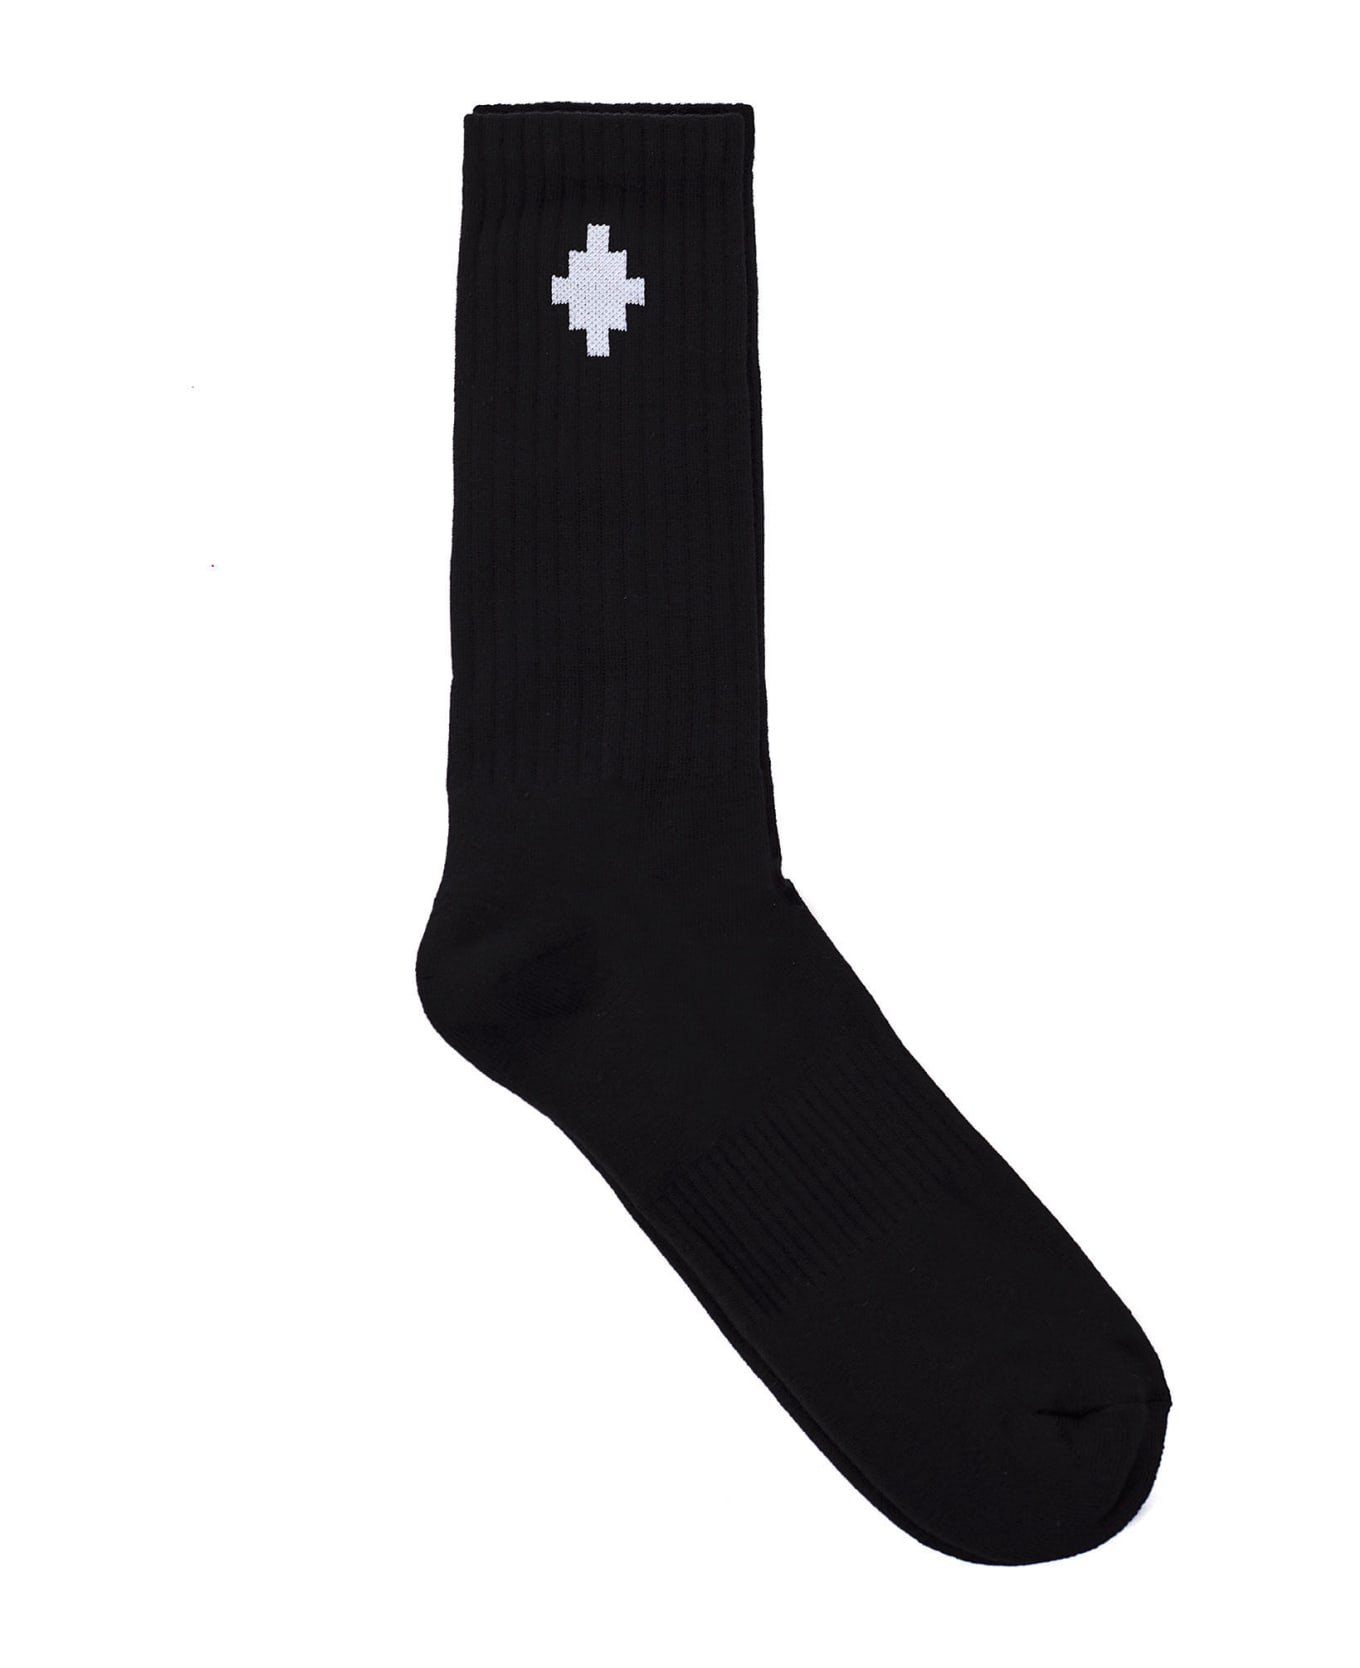 Marcelo Burlon Cross Socks - Nero bianco